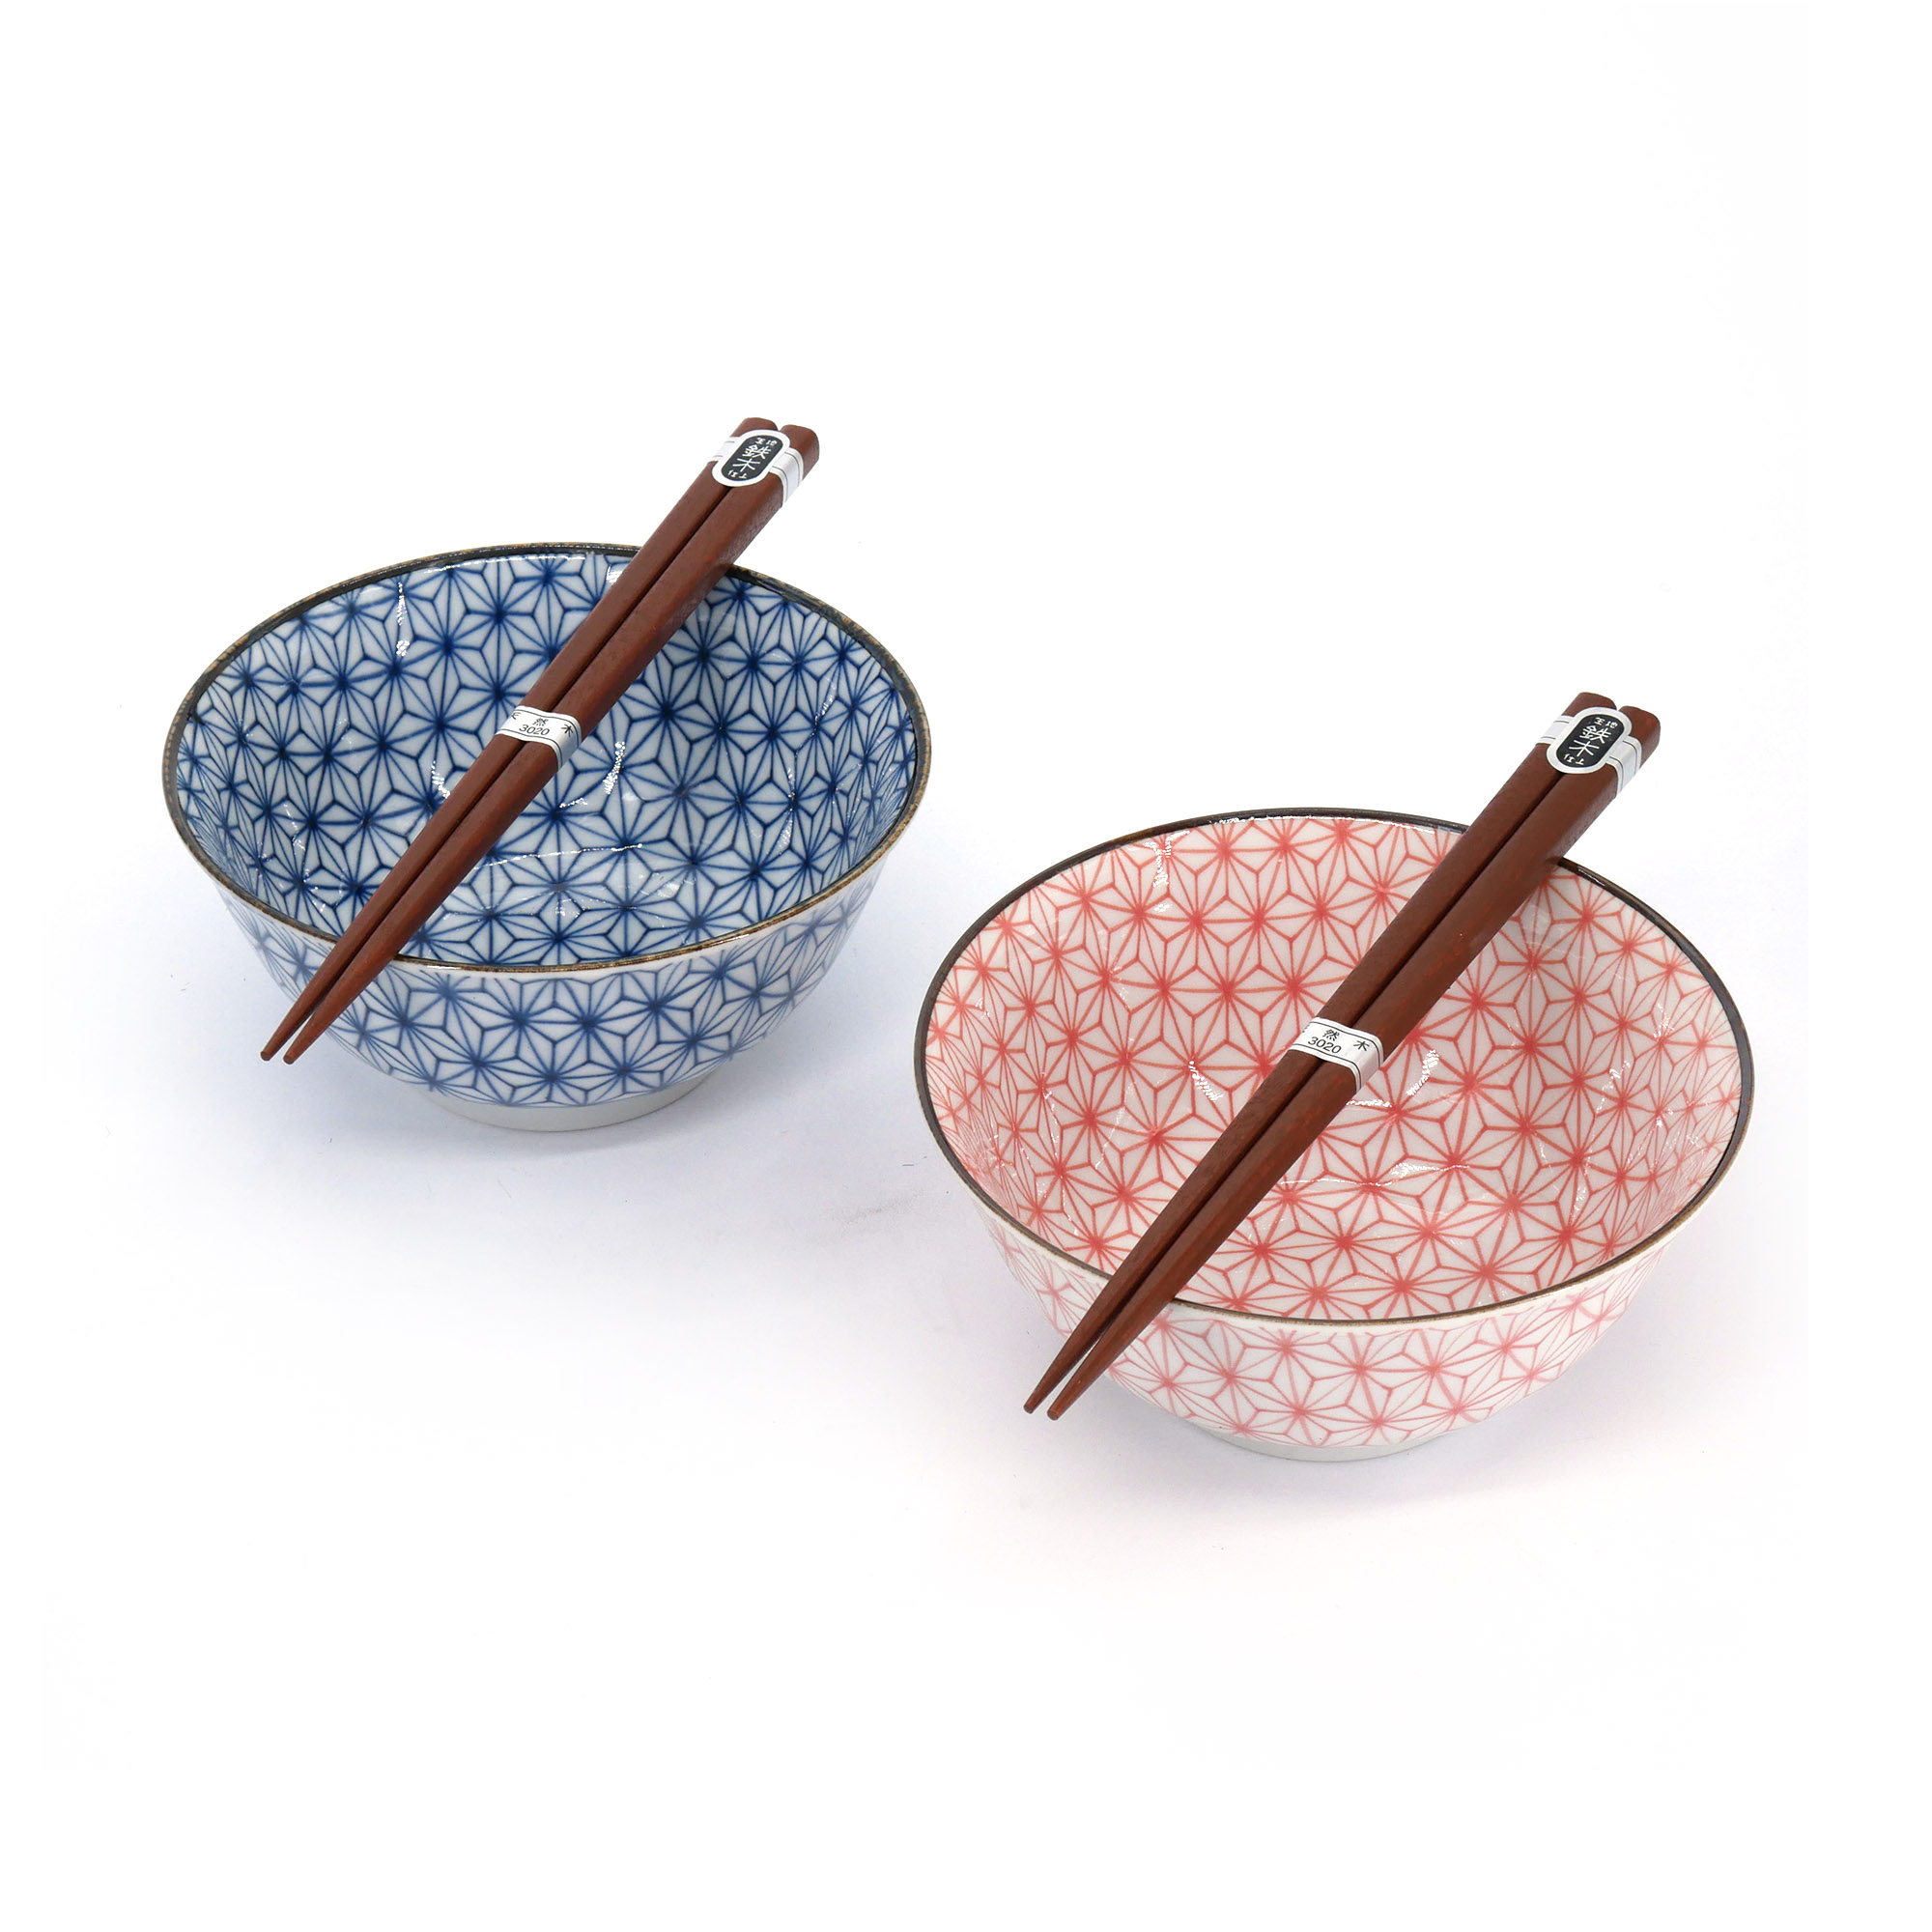 Juego de 2 cuencos japoneses de cerámica - KURO SAKURA